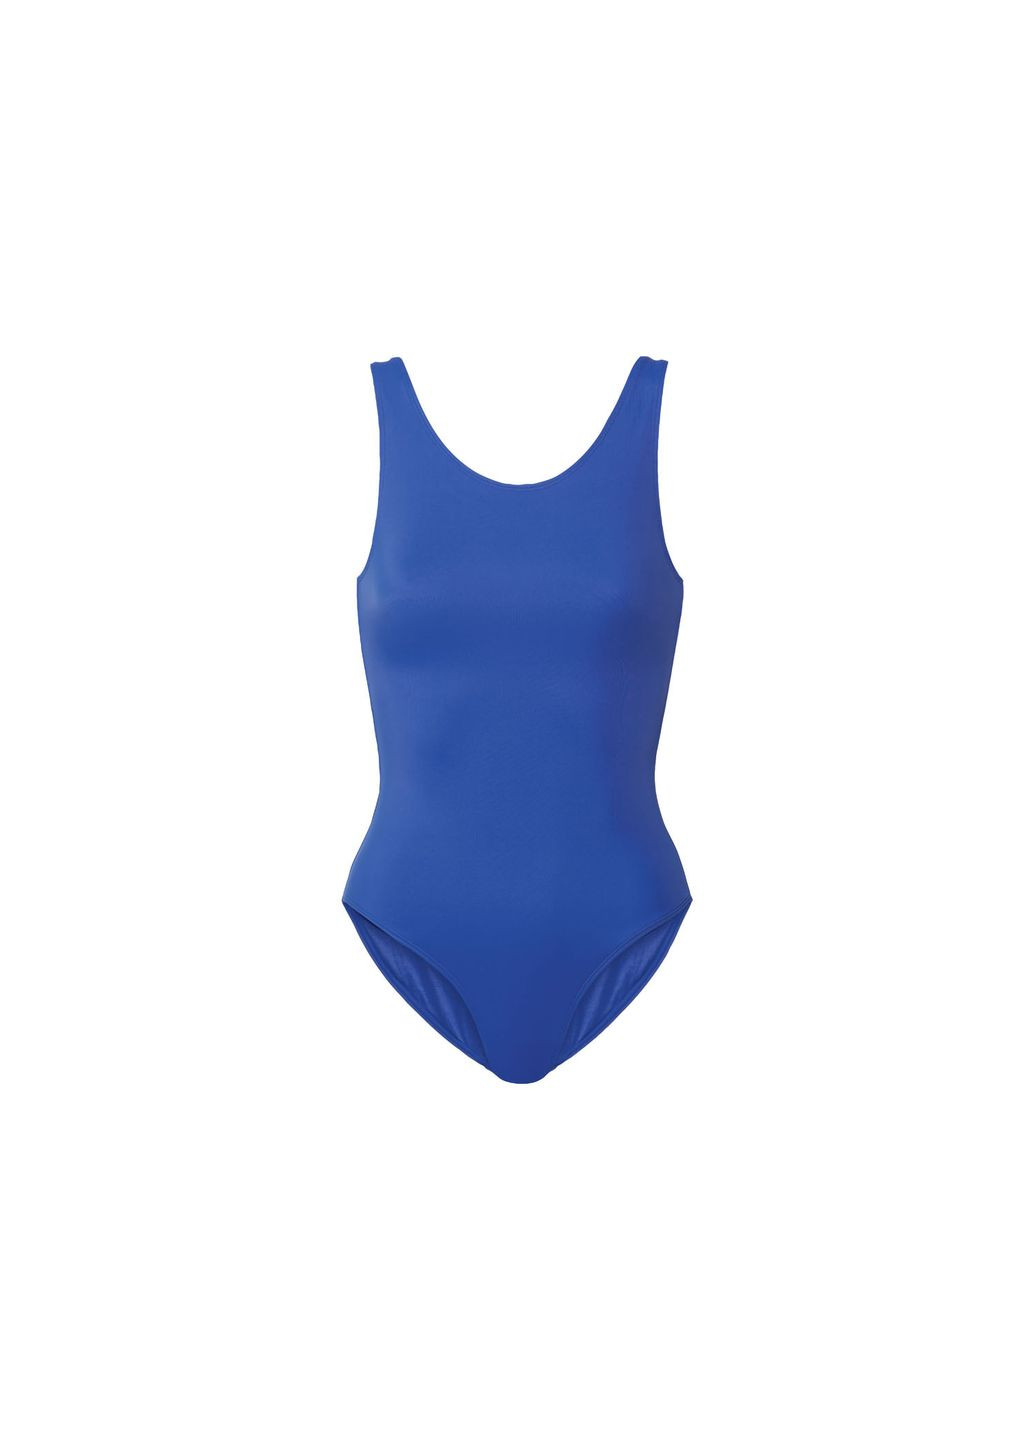 Синий купальник слитный на подкладке для женщины creora® 371866 бикини Esmara